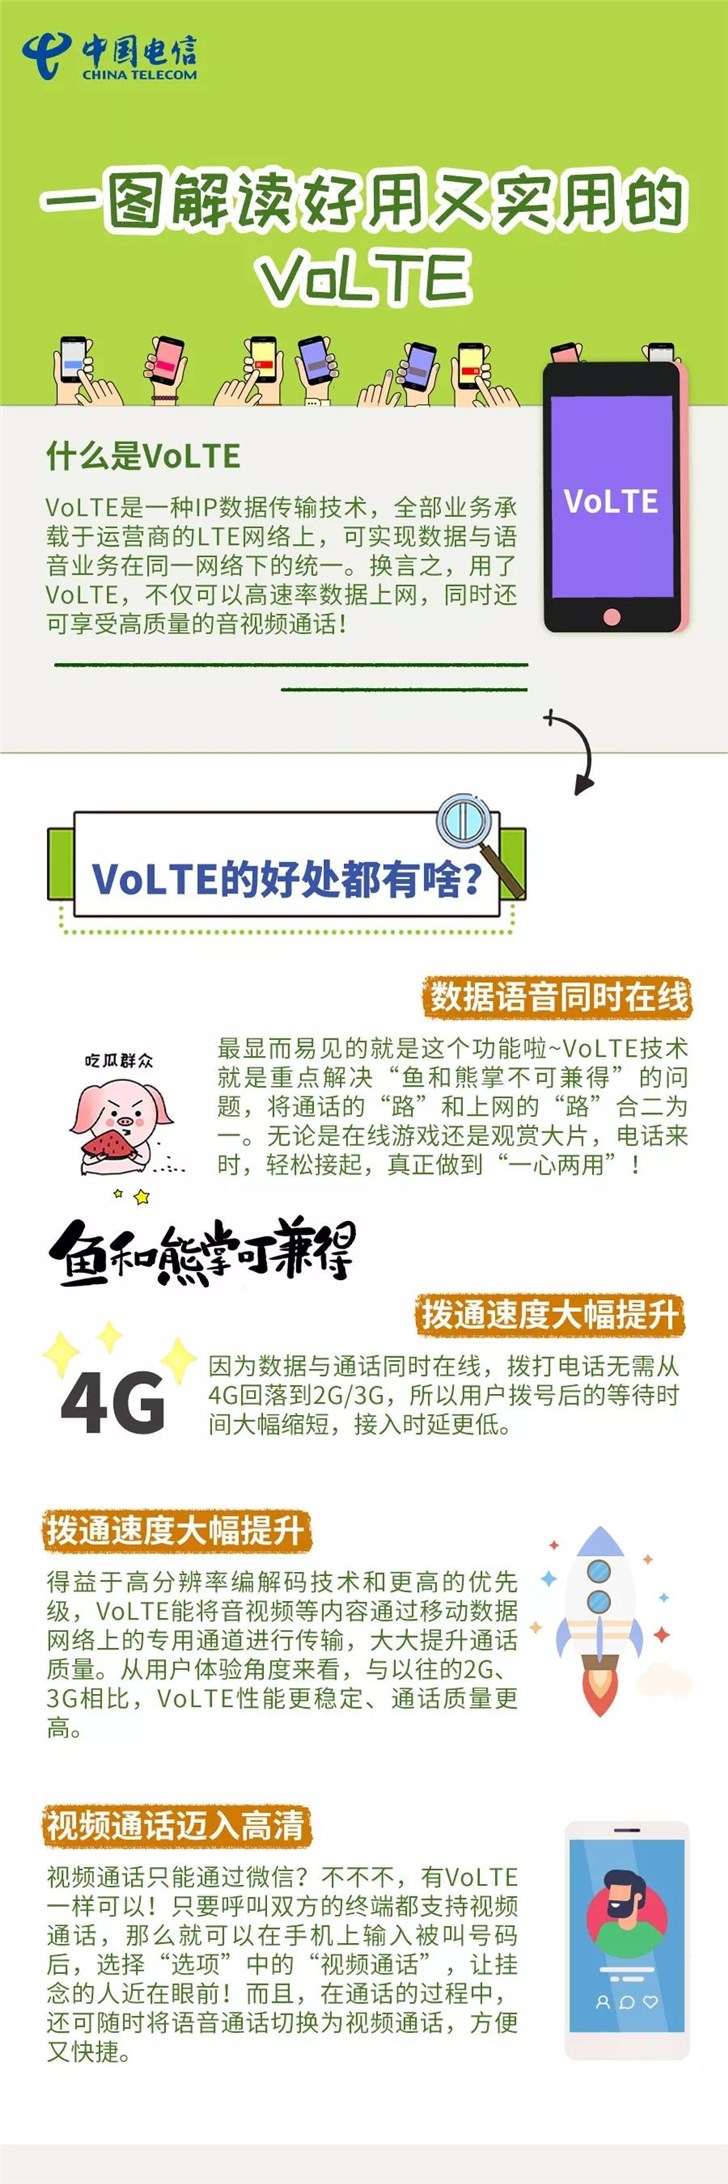 一图读懂VoLTE技术-中国电信